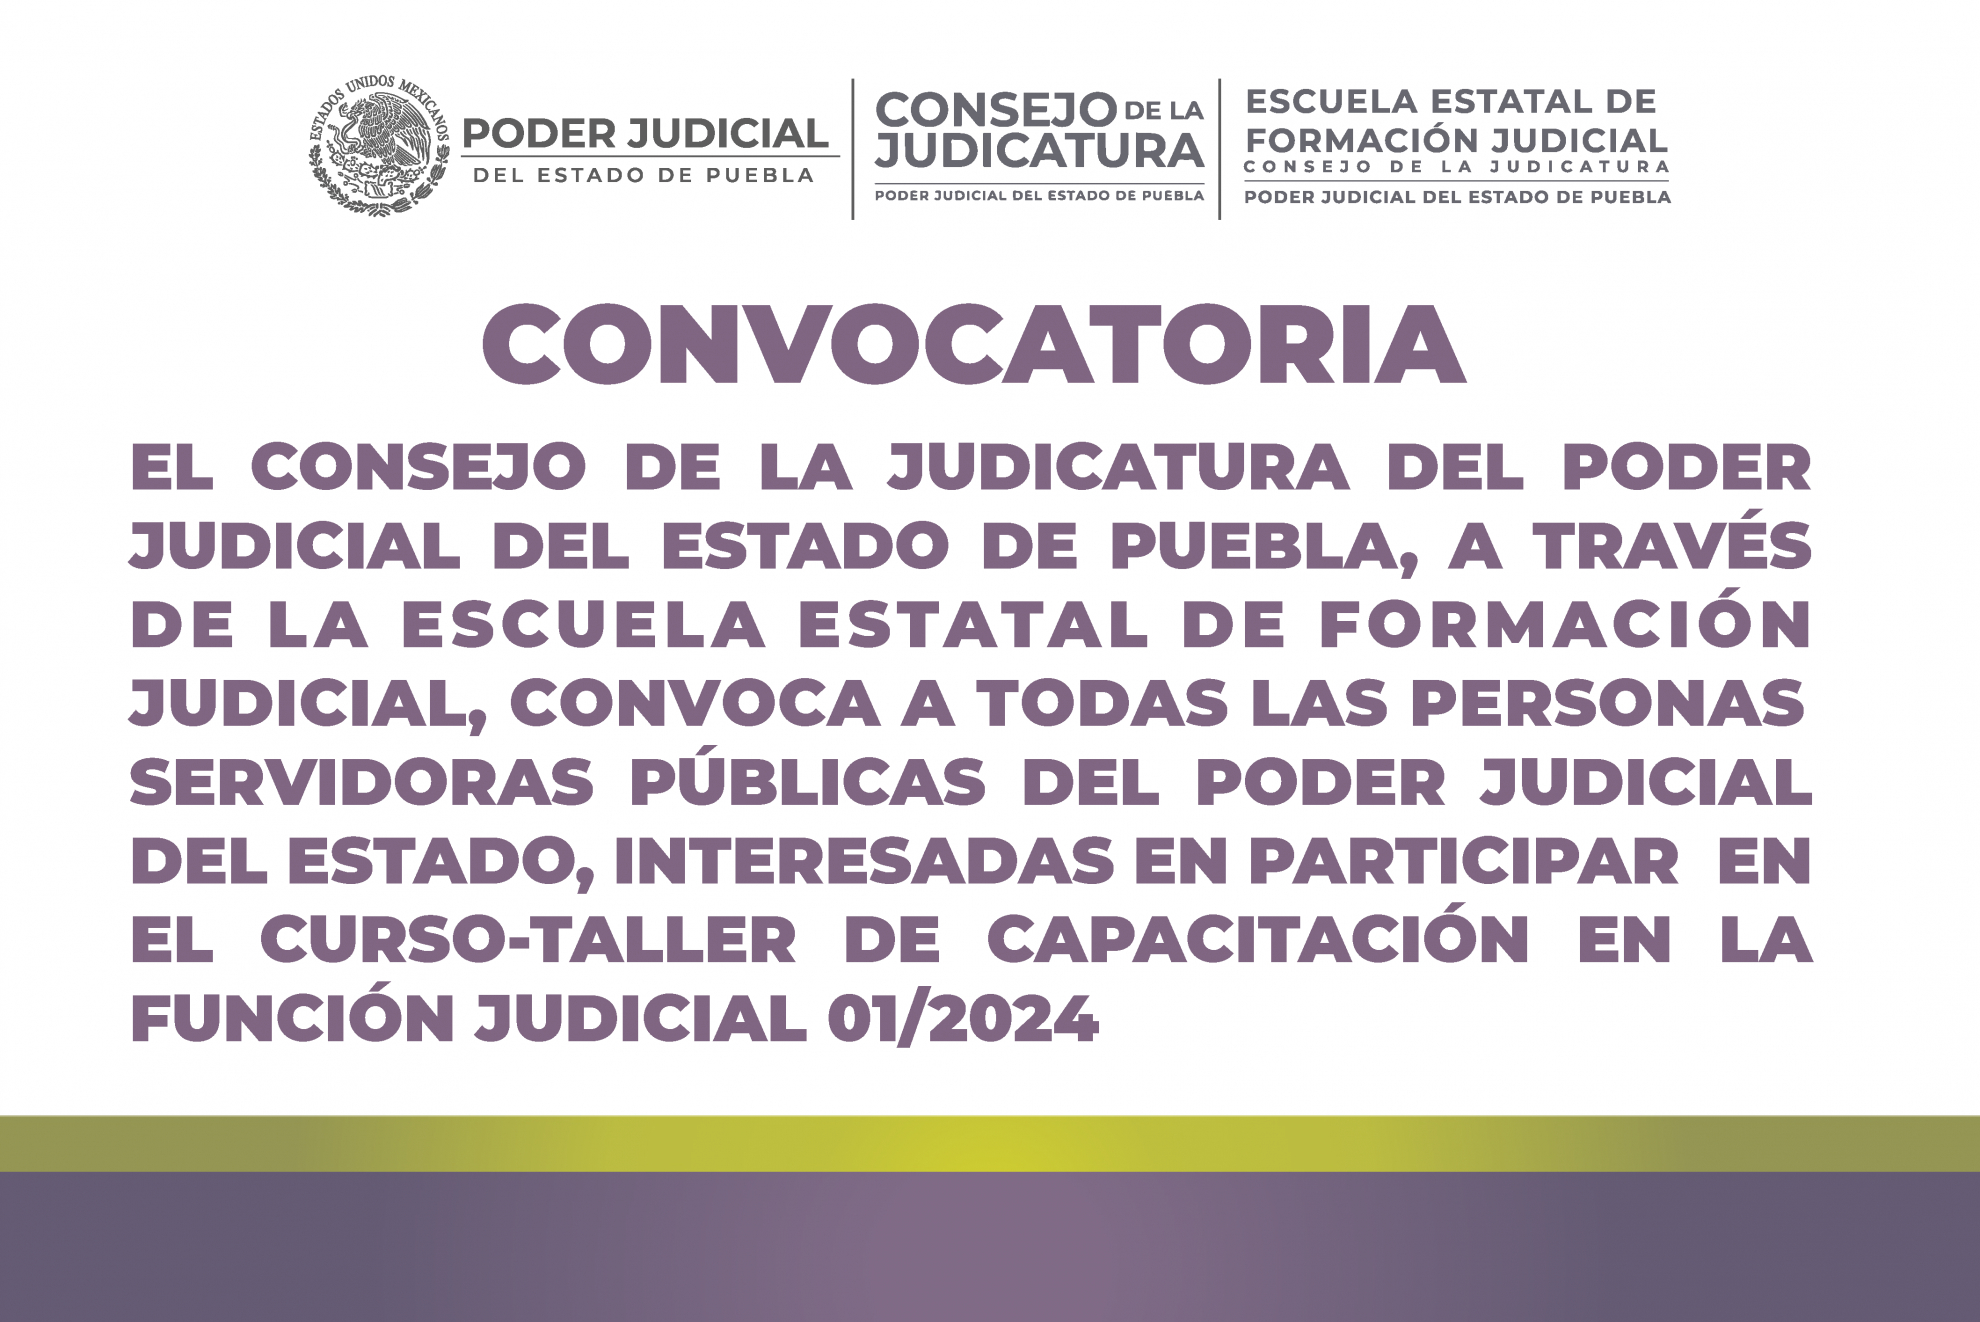 Convocatoria de la Escuela Estatal de Formación Judicial para Curso-Taller de Capacitación 01/2024